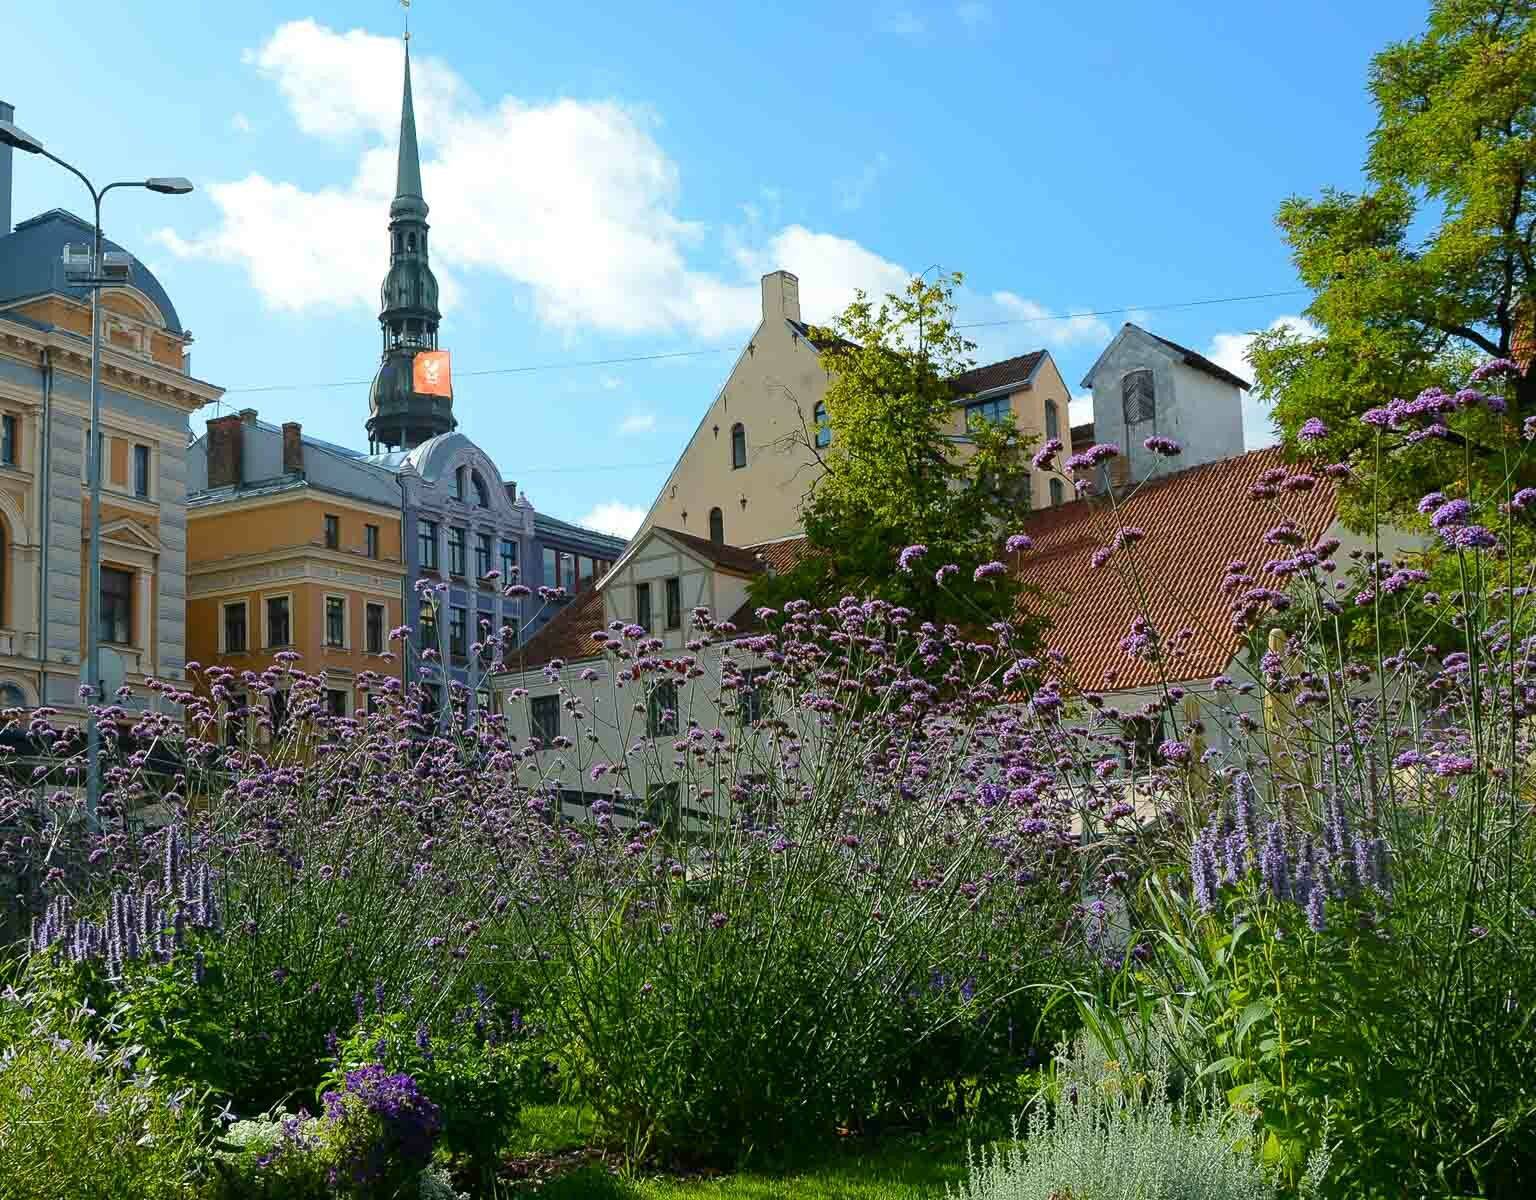 Hinter lila Blumen verstecken sich wunderschöne Häuserfassaden im Jugendstil, sie zieren das Stadtbild Rigas in Lettland.